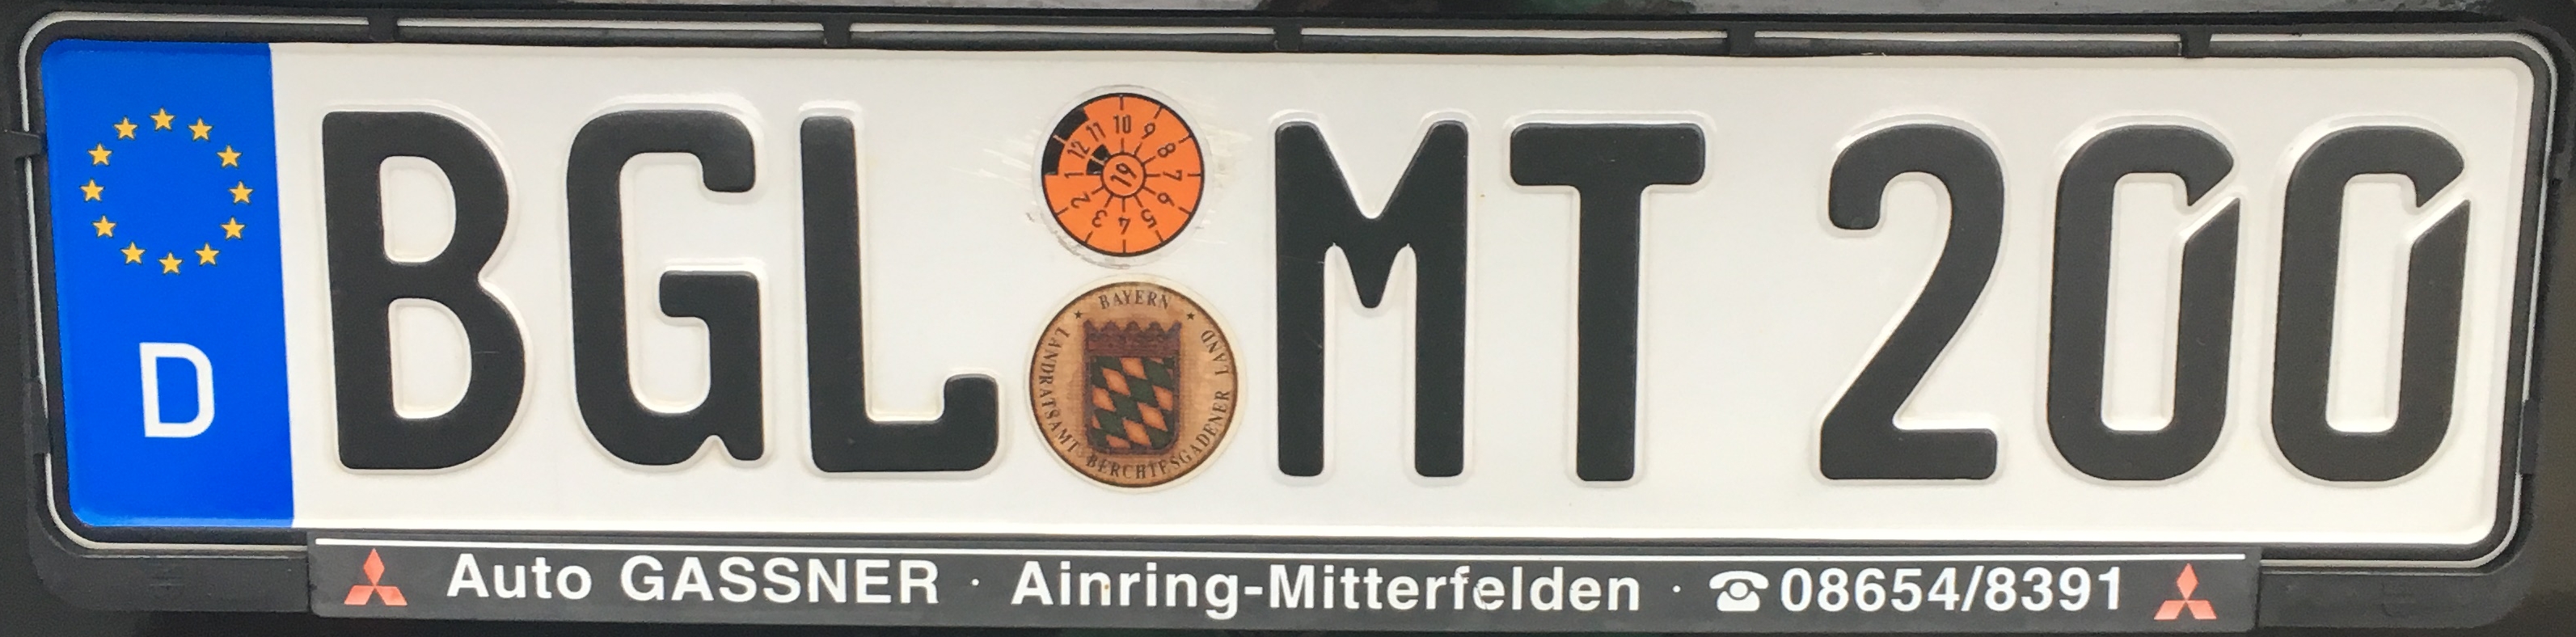 Registrační značky Německo - BGL - Berchtesgadener Land, foto: www.podalnici.cz